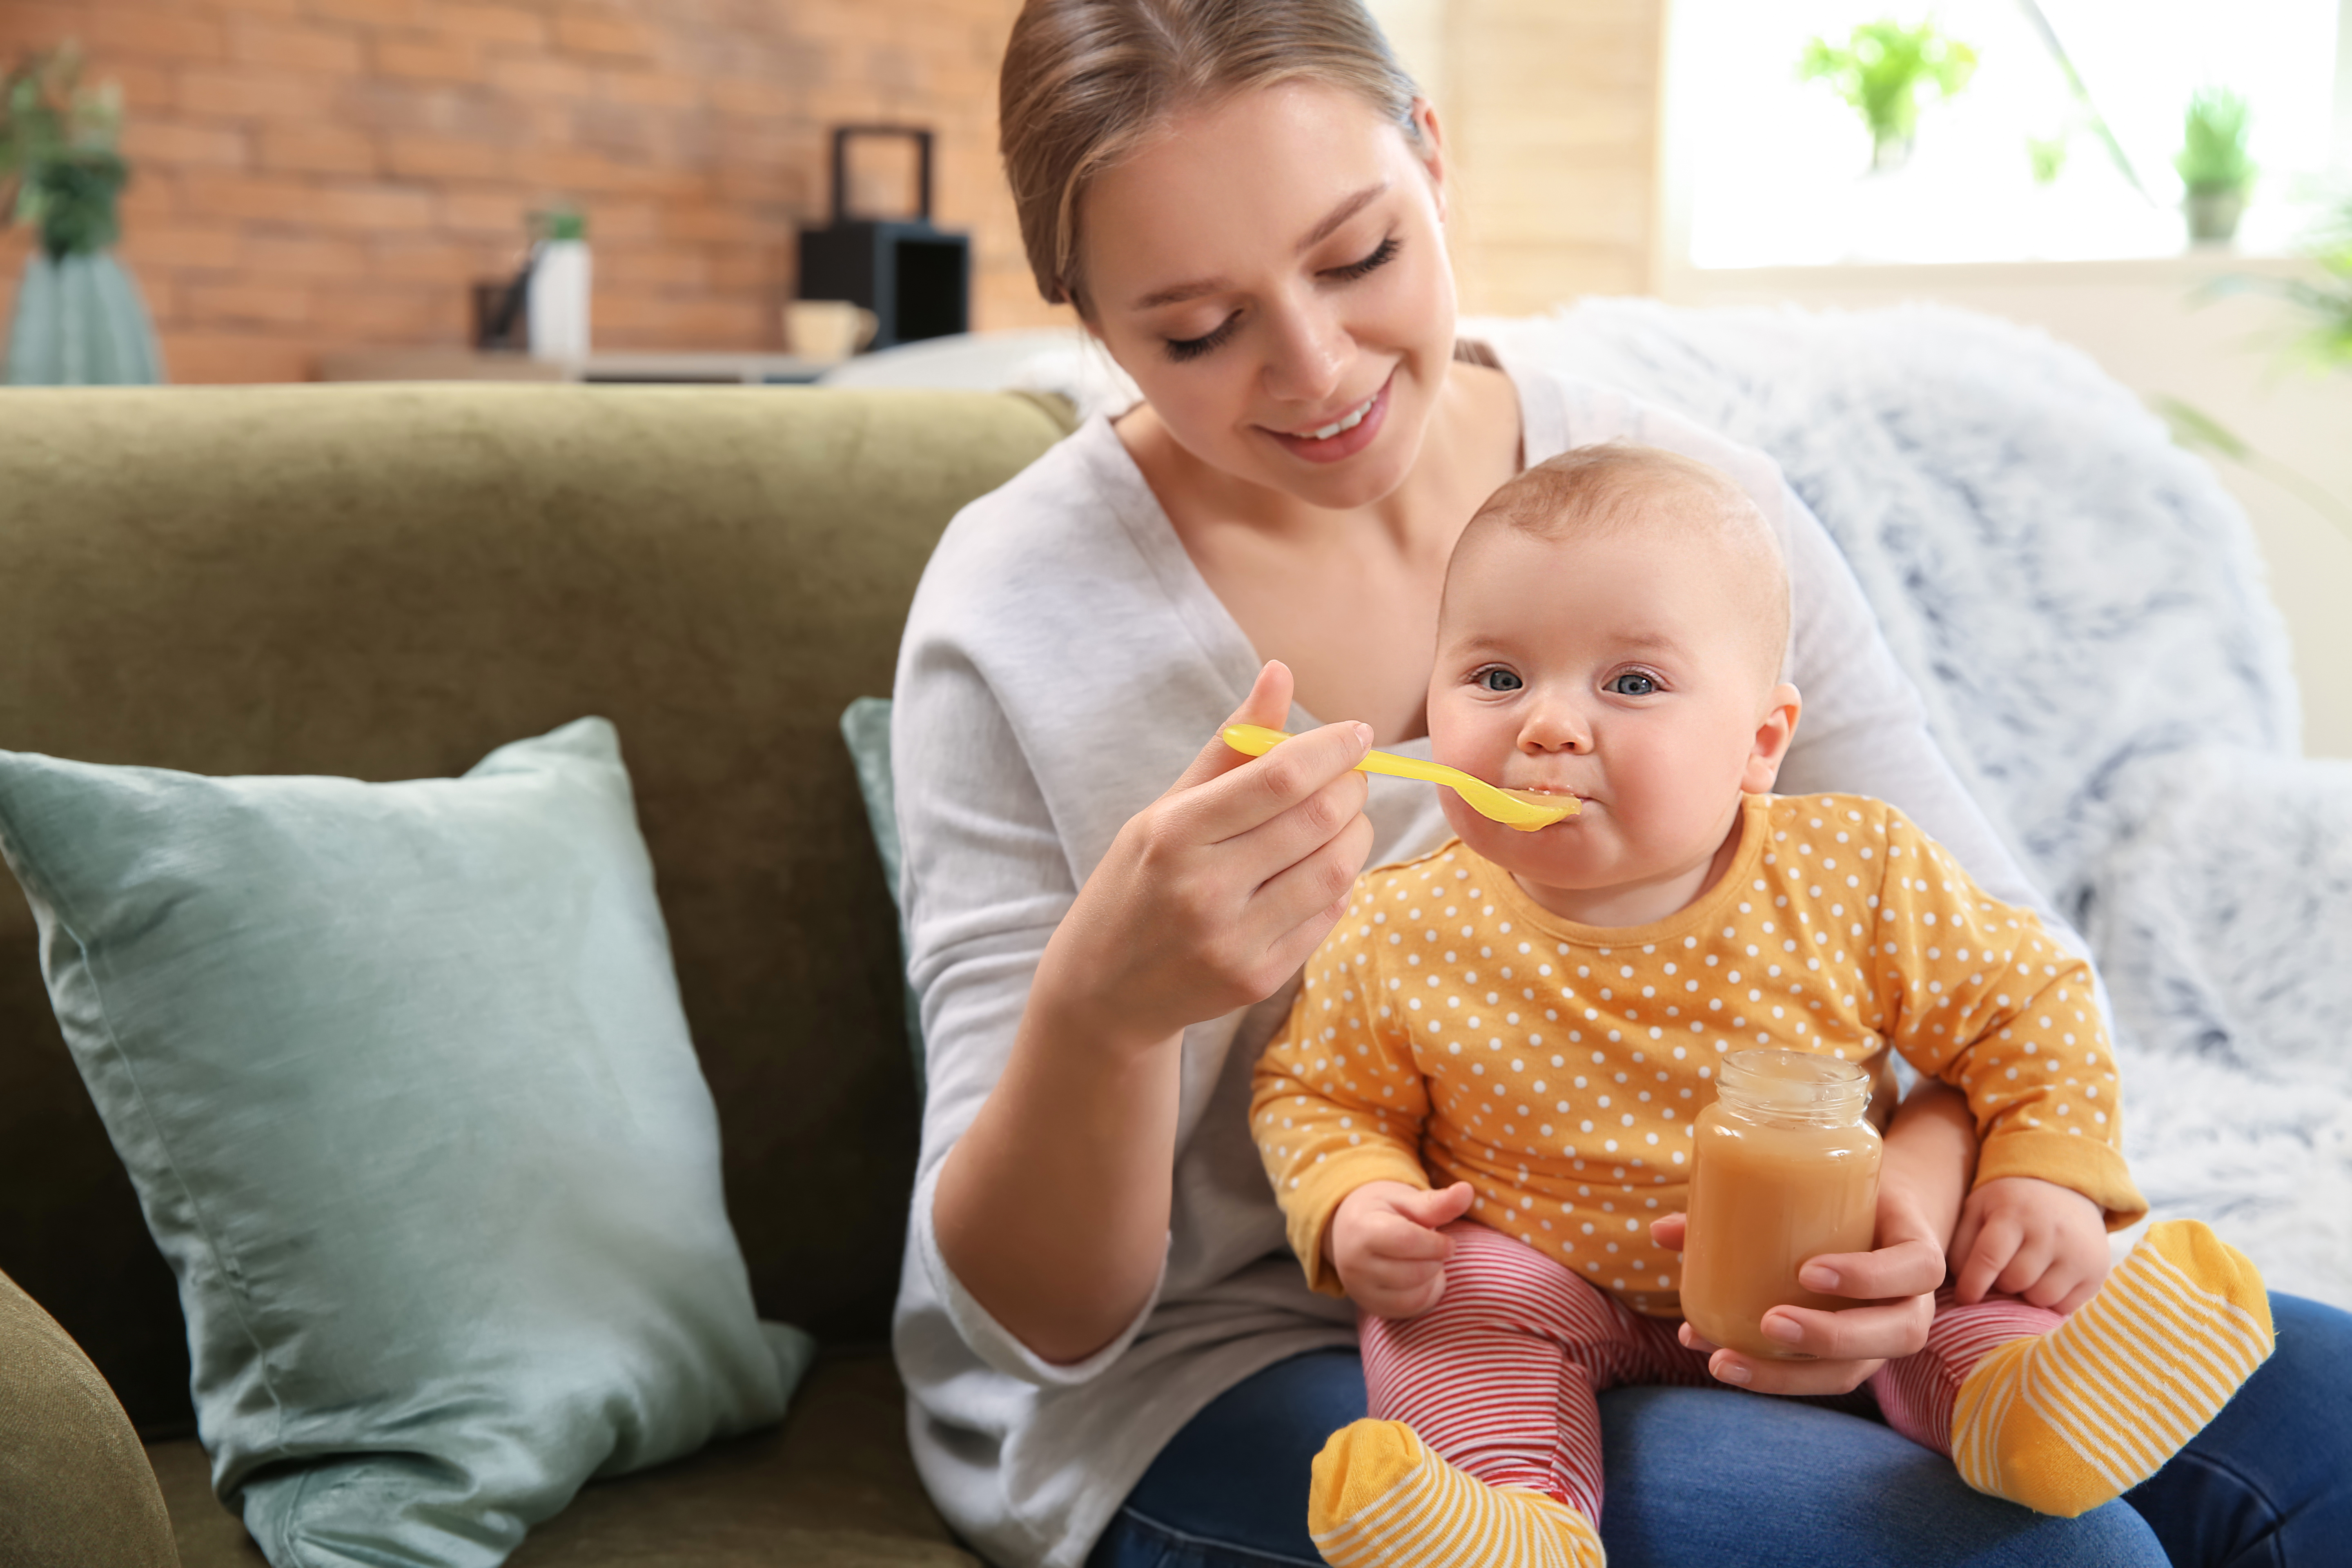 La&nbsp;diversification alimentaire&nbsp;de bébé consiste à introduire des aliments autres que le lait à partir de l'âge de 4 à 6 mois.&nbsp;© Pixel-Shot, Adobe Stock